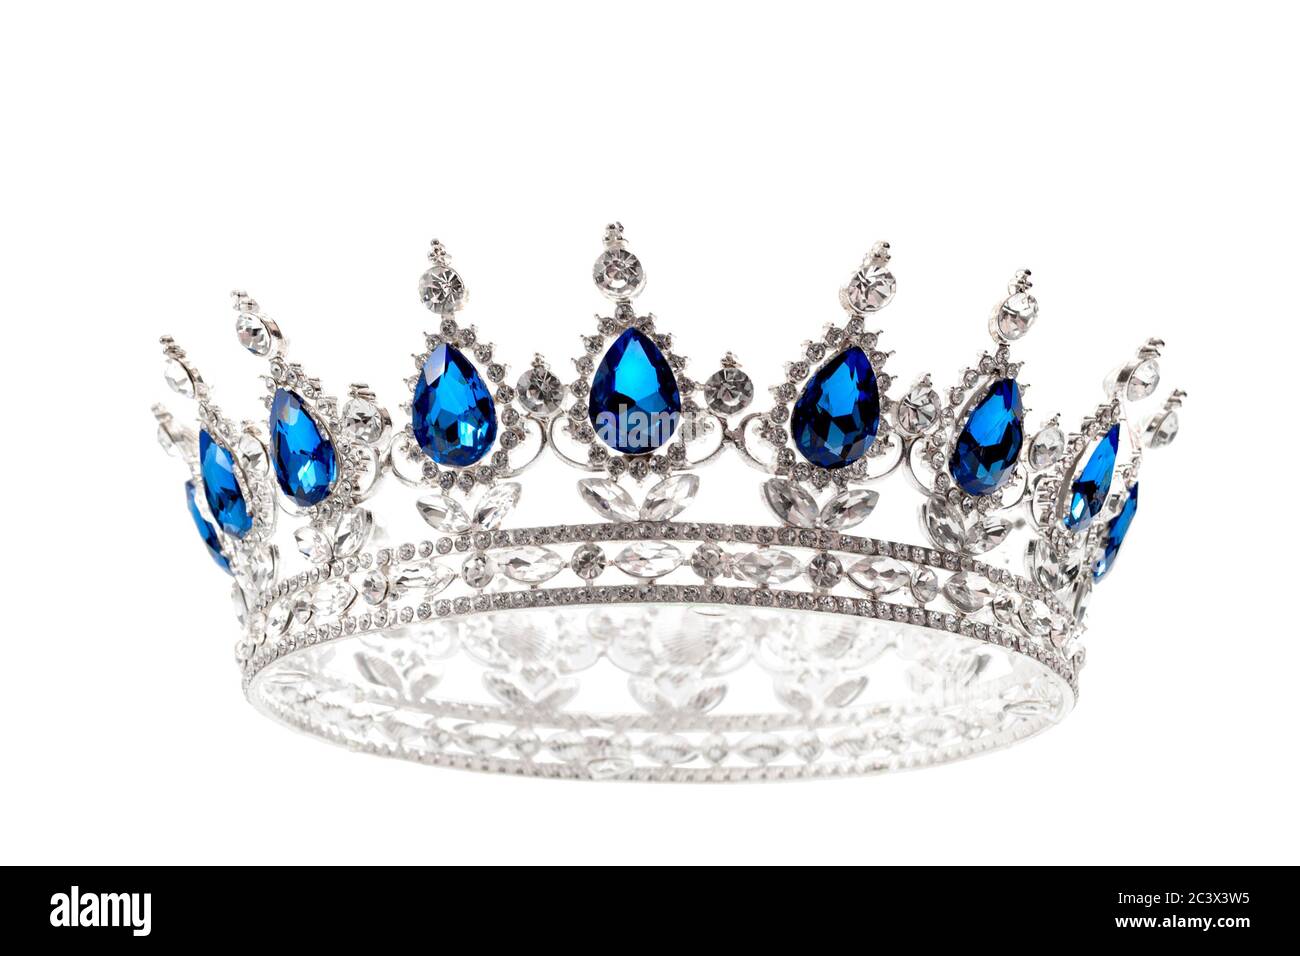 Beauty-Pageant Gewinner, Braut Accessoire in Hochzeit und königliche Krone für ein Queen-Konzept mit einem silbernen Tiara-Diamanten und blauen Saphirsteinen ist Stockfoto